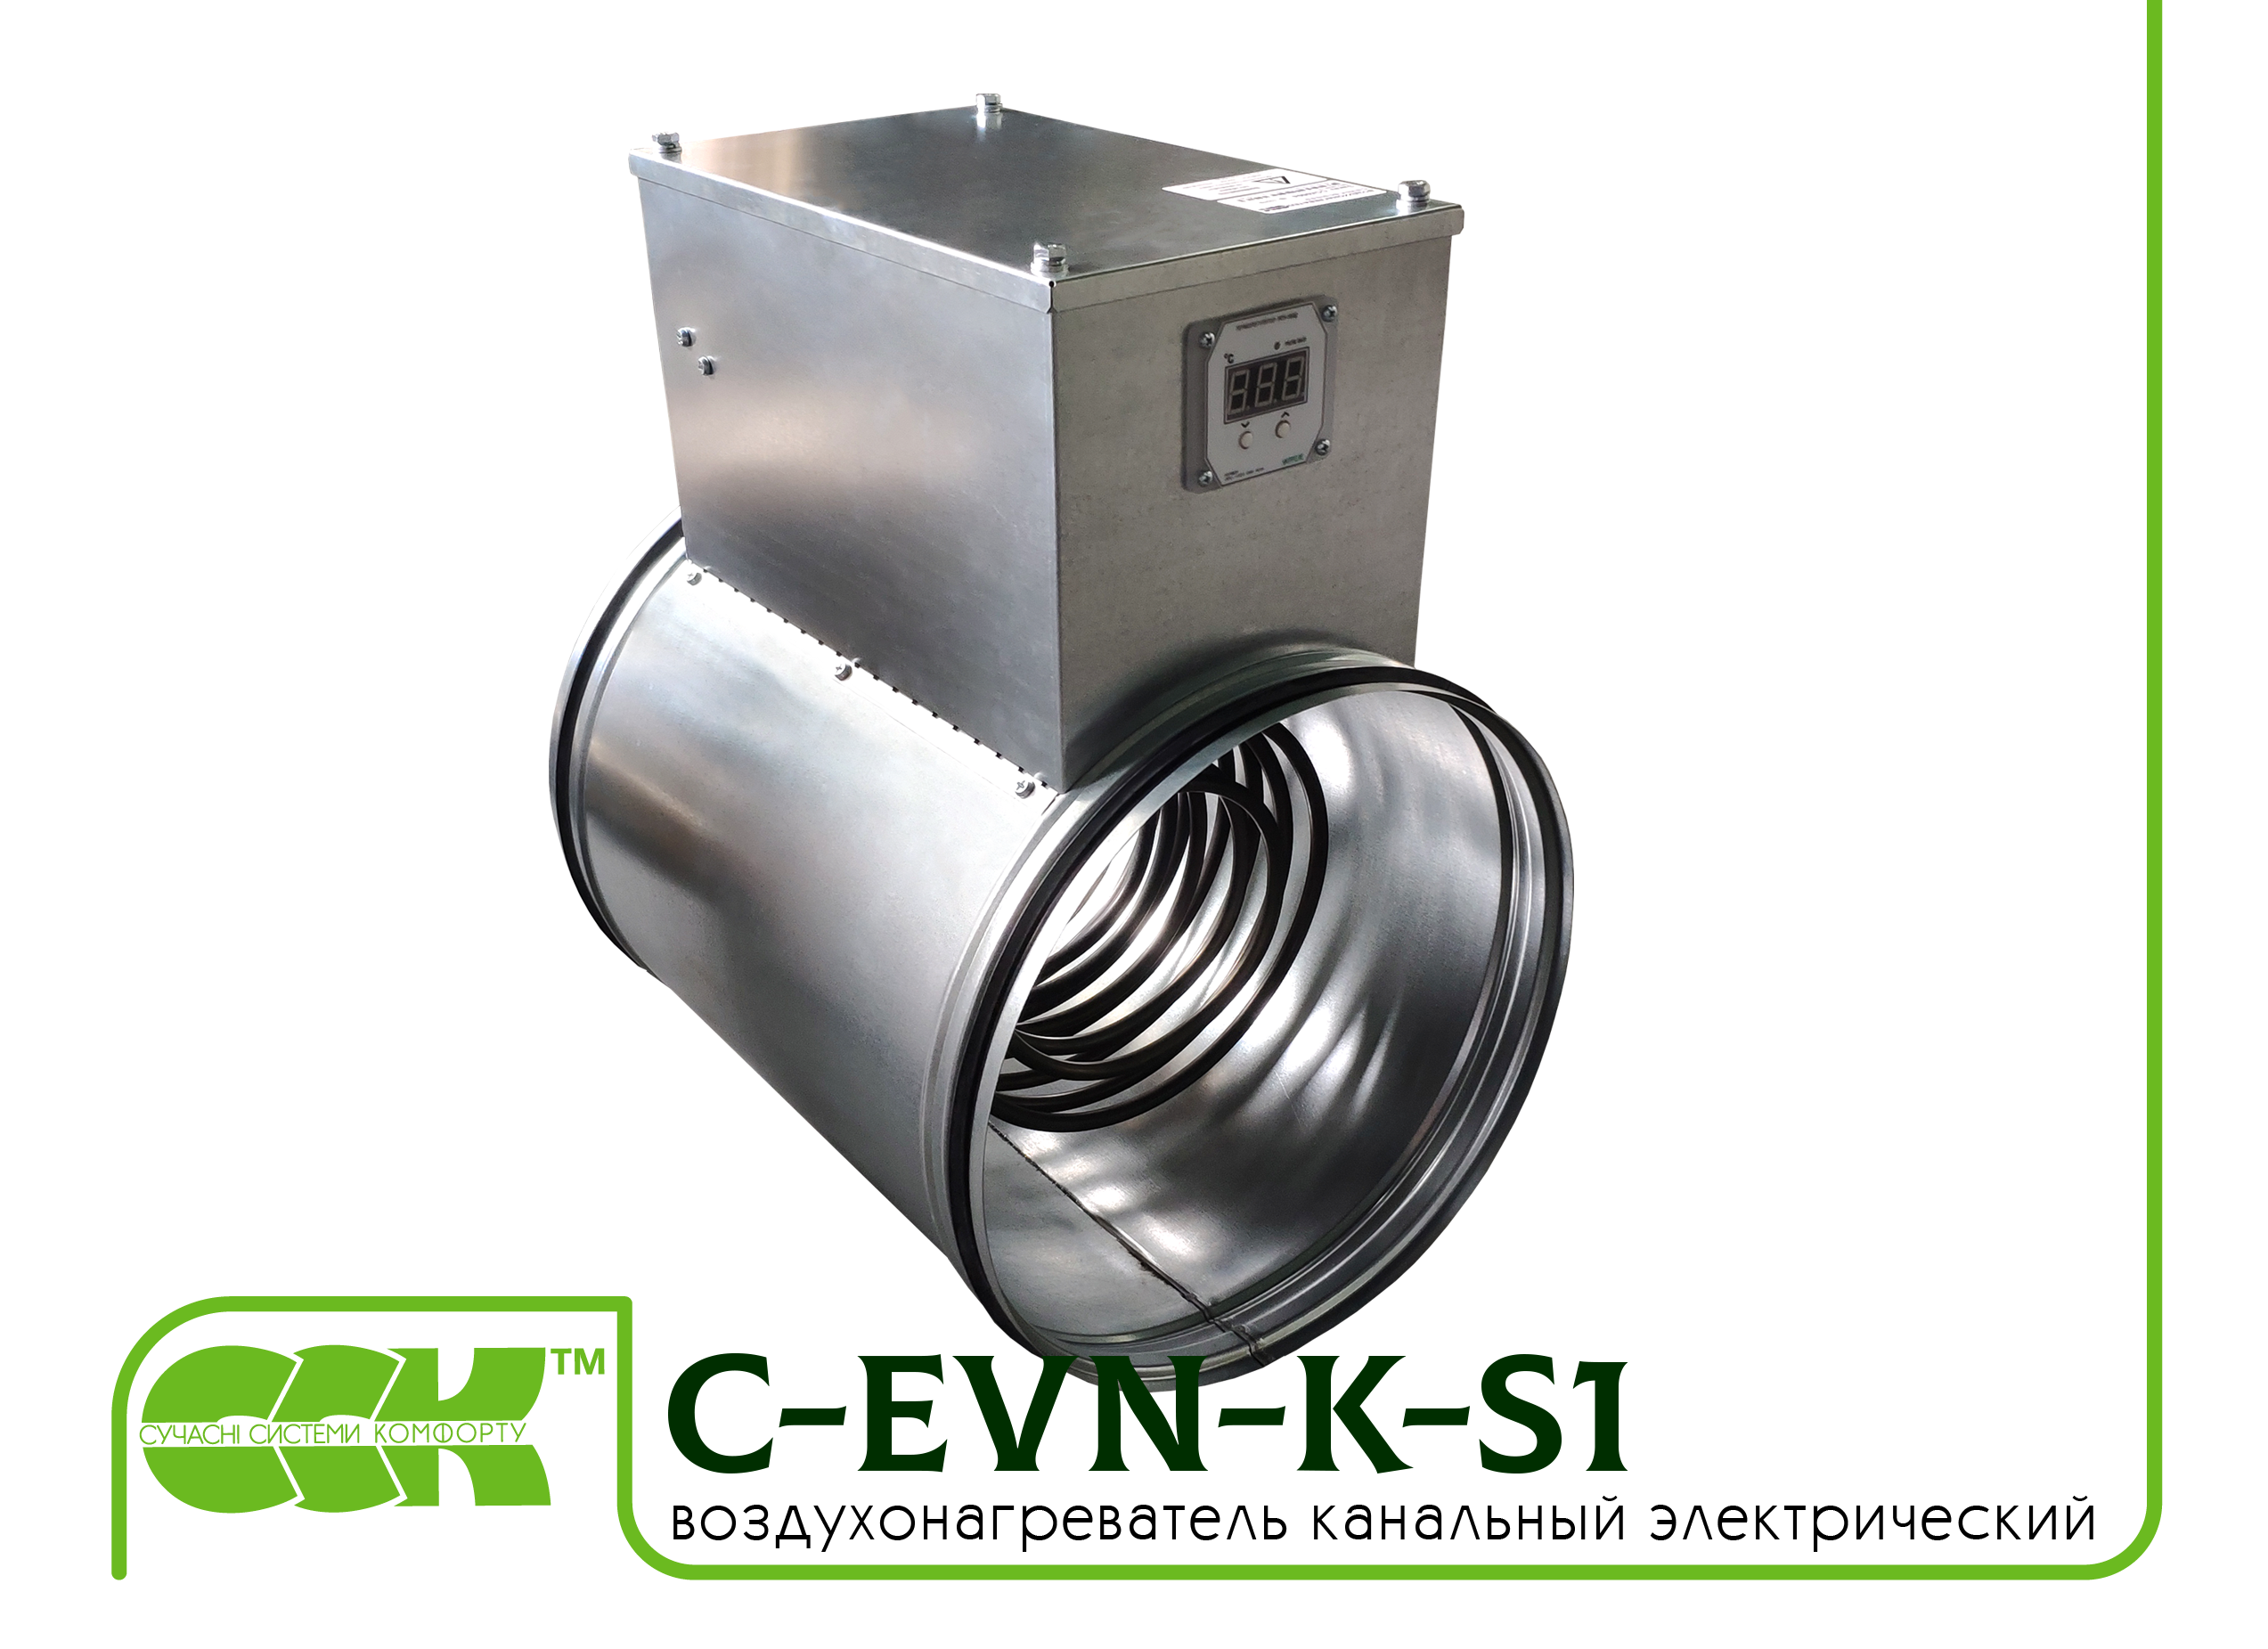 Воздухонагреватель канальный электрический для круглых каналов C-EVN-K-S1-250-4,5